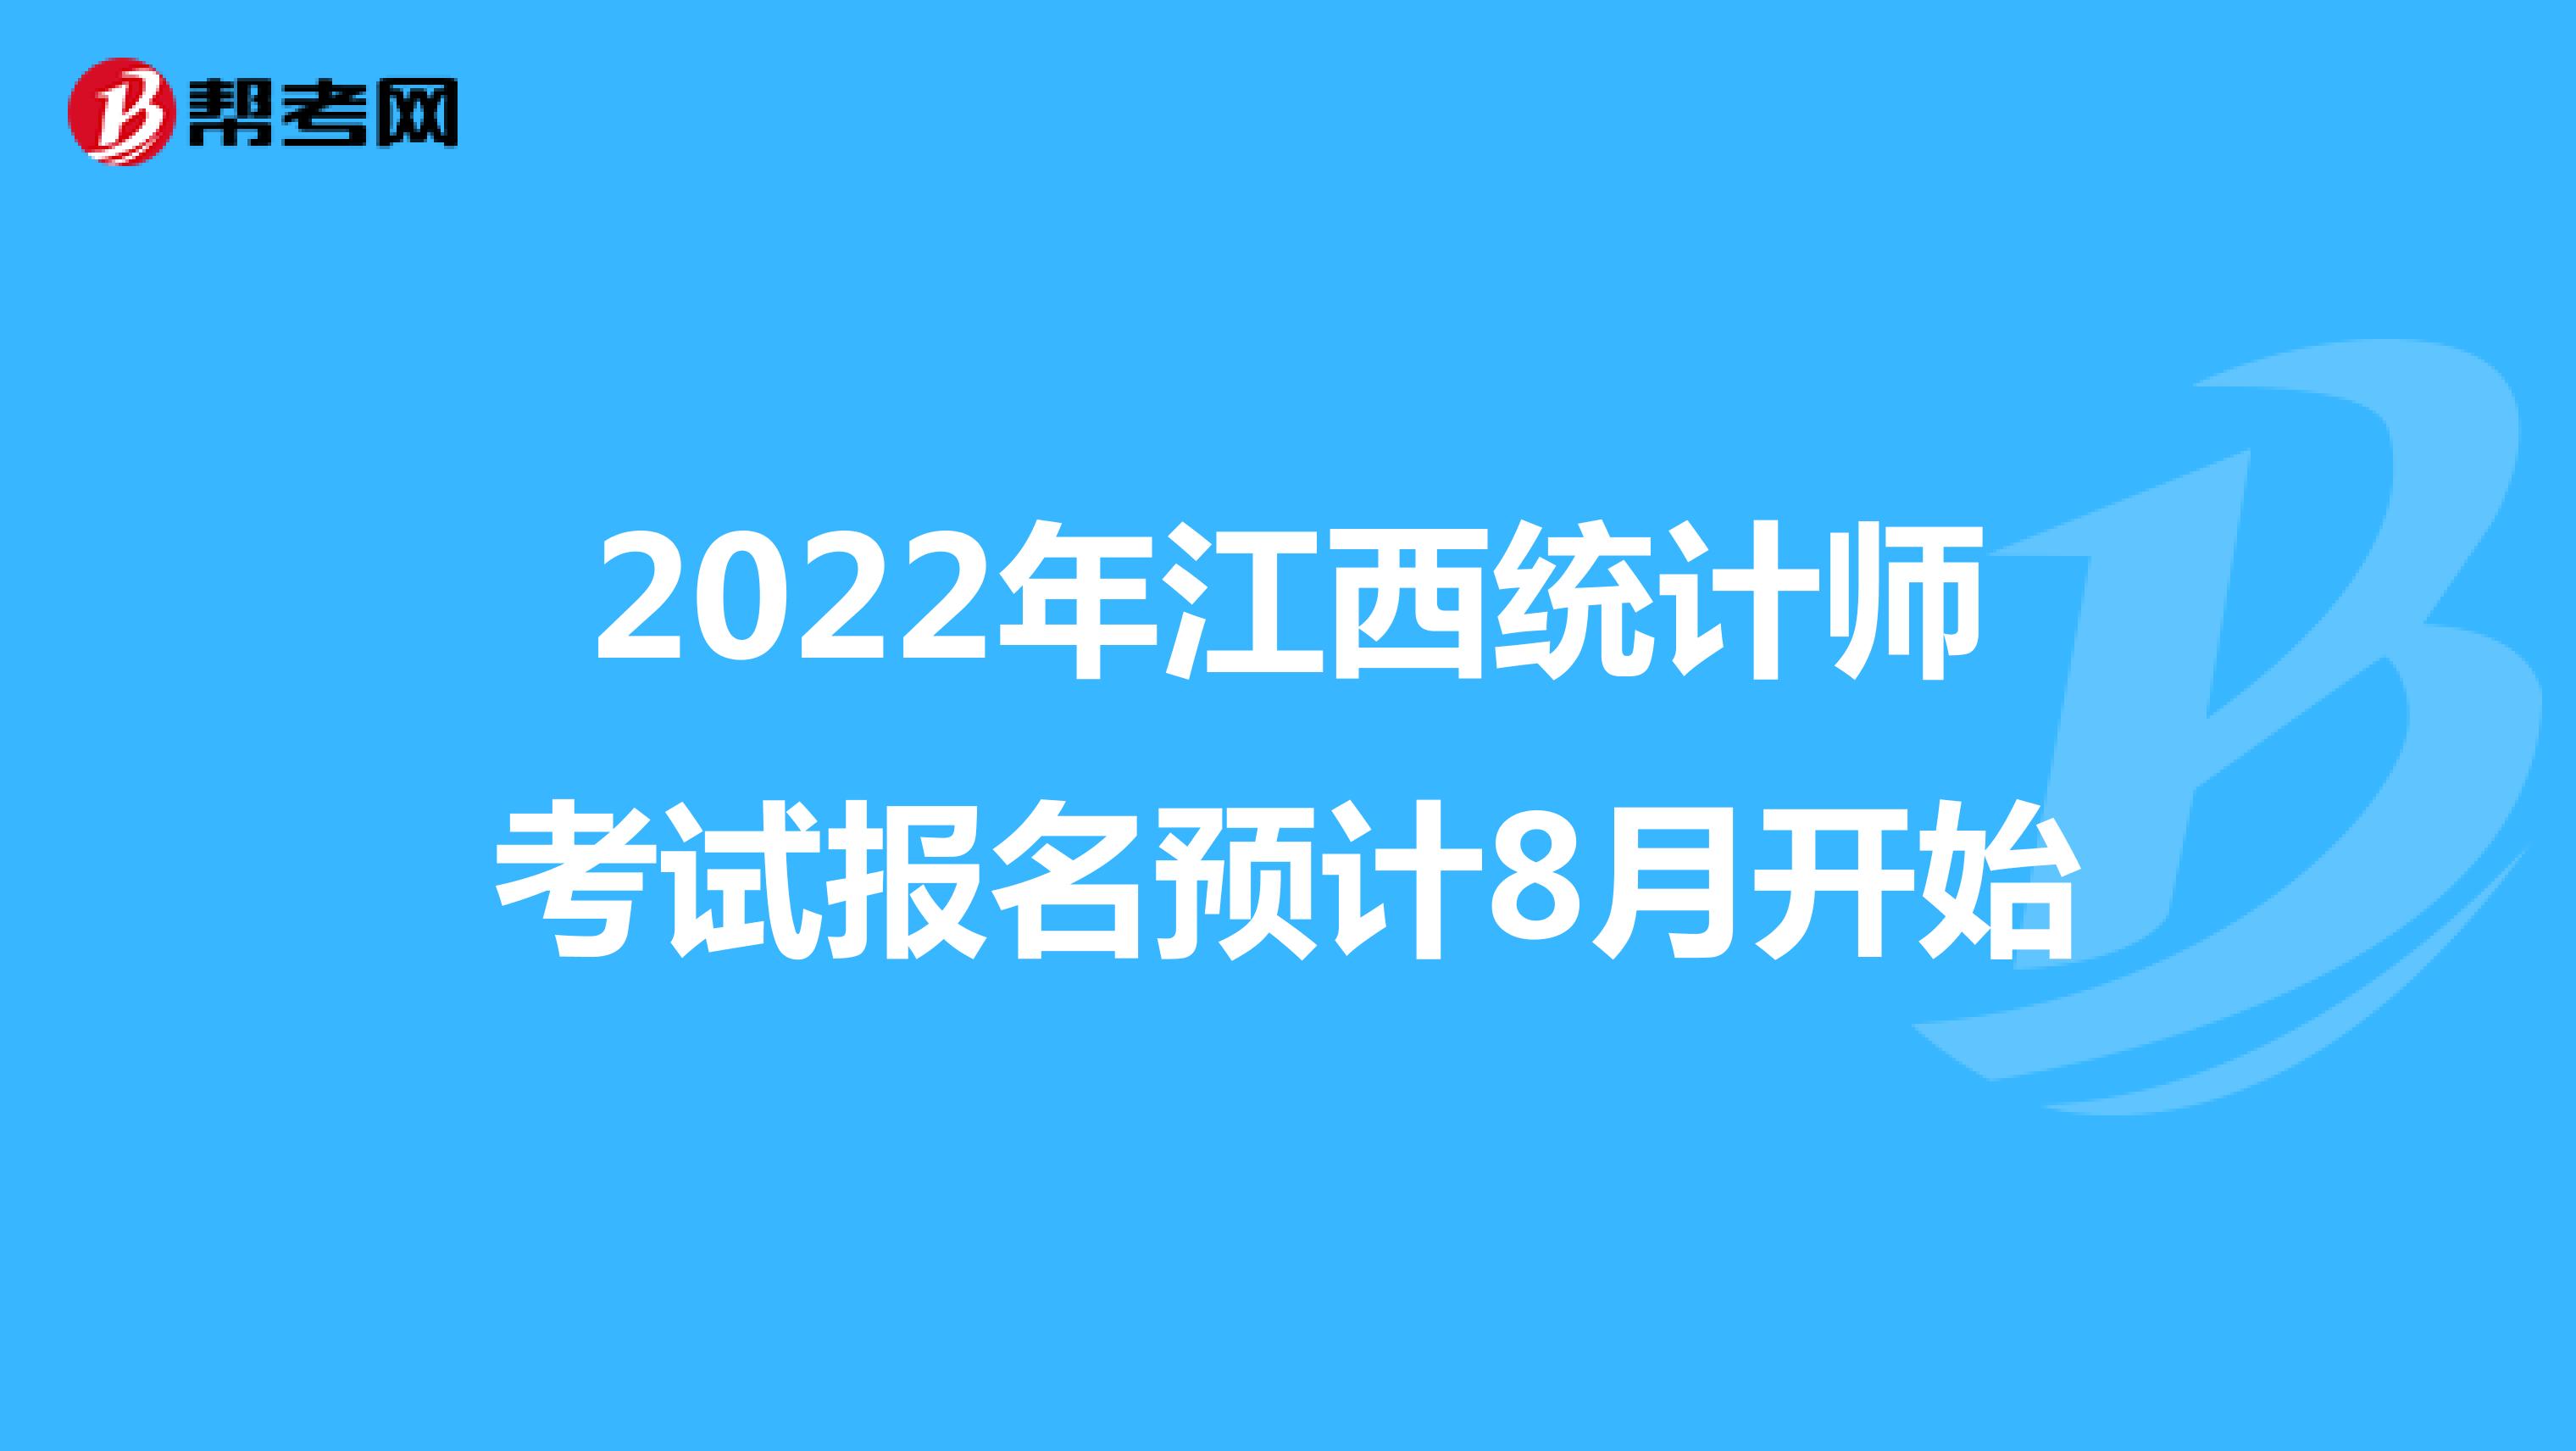 2022年江西统计师考试报名预计8月开始